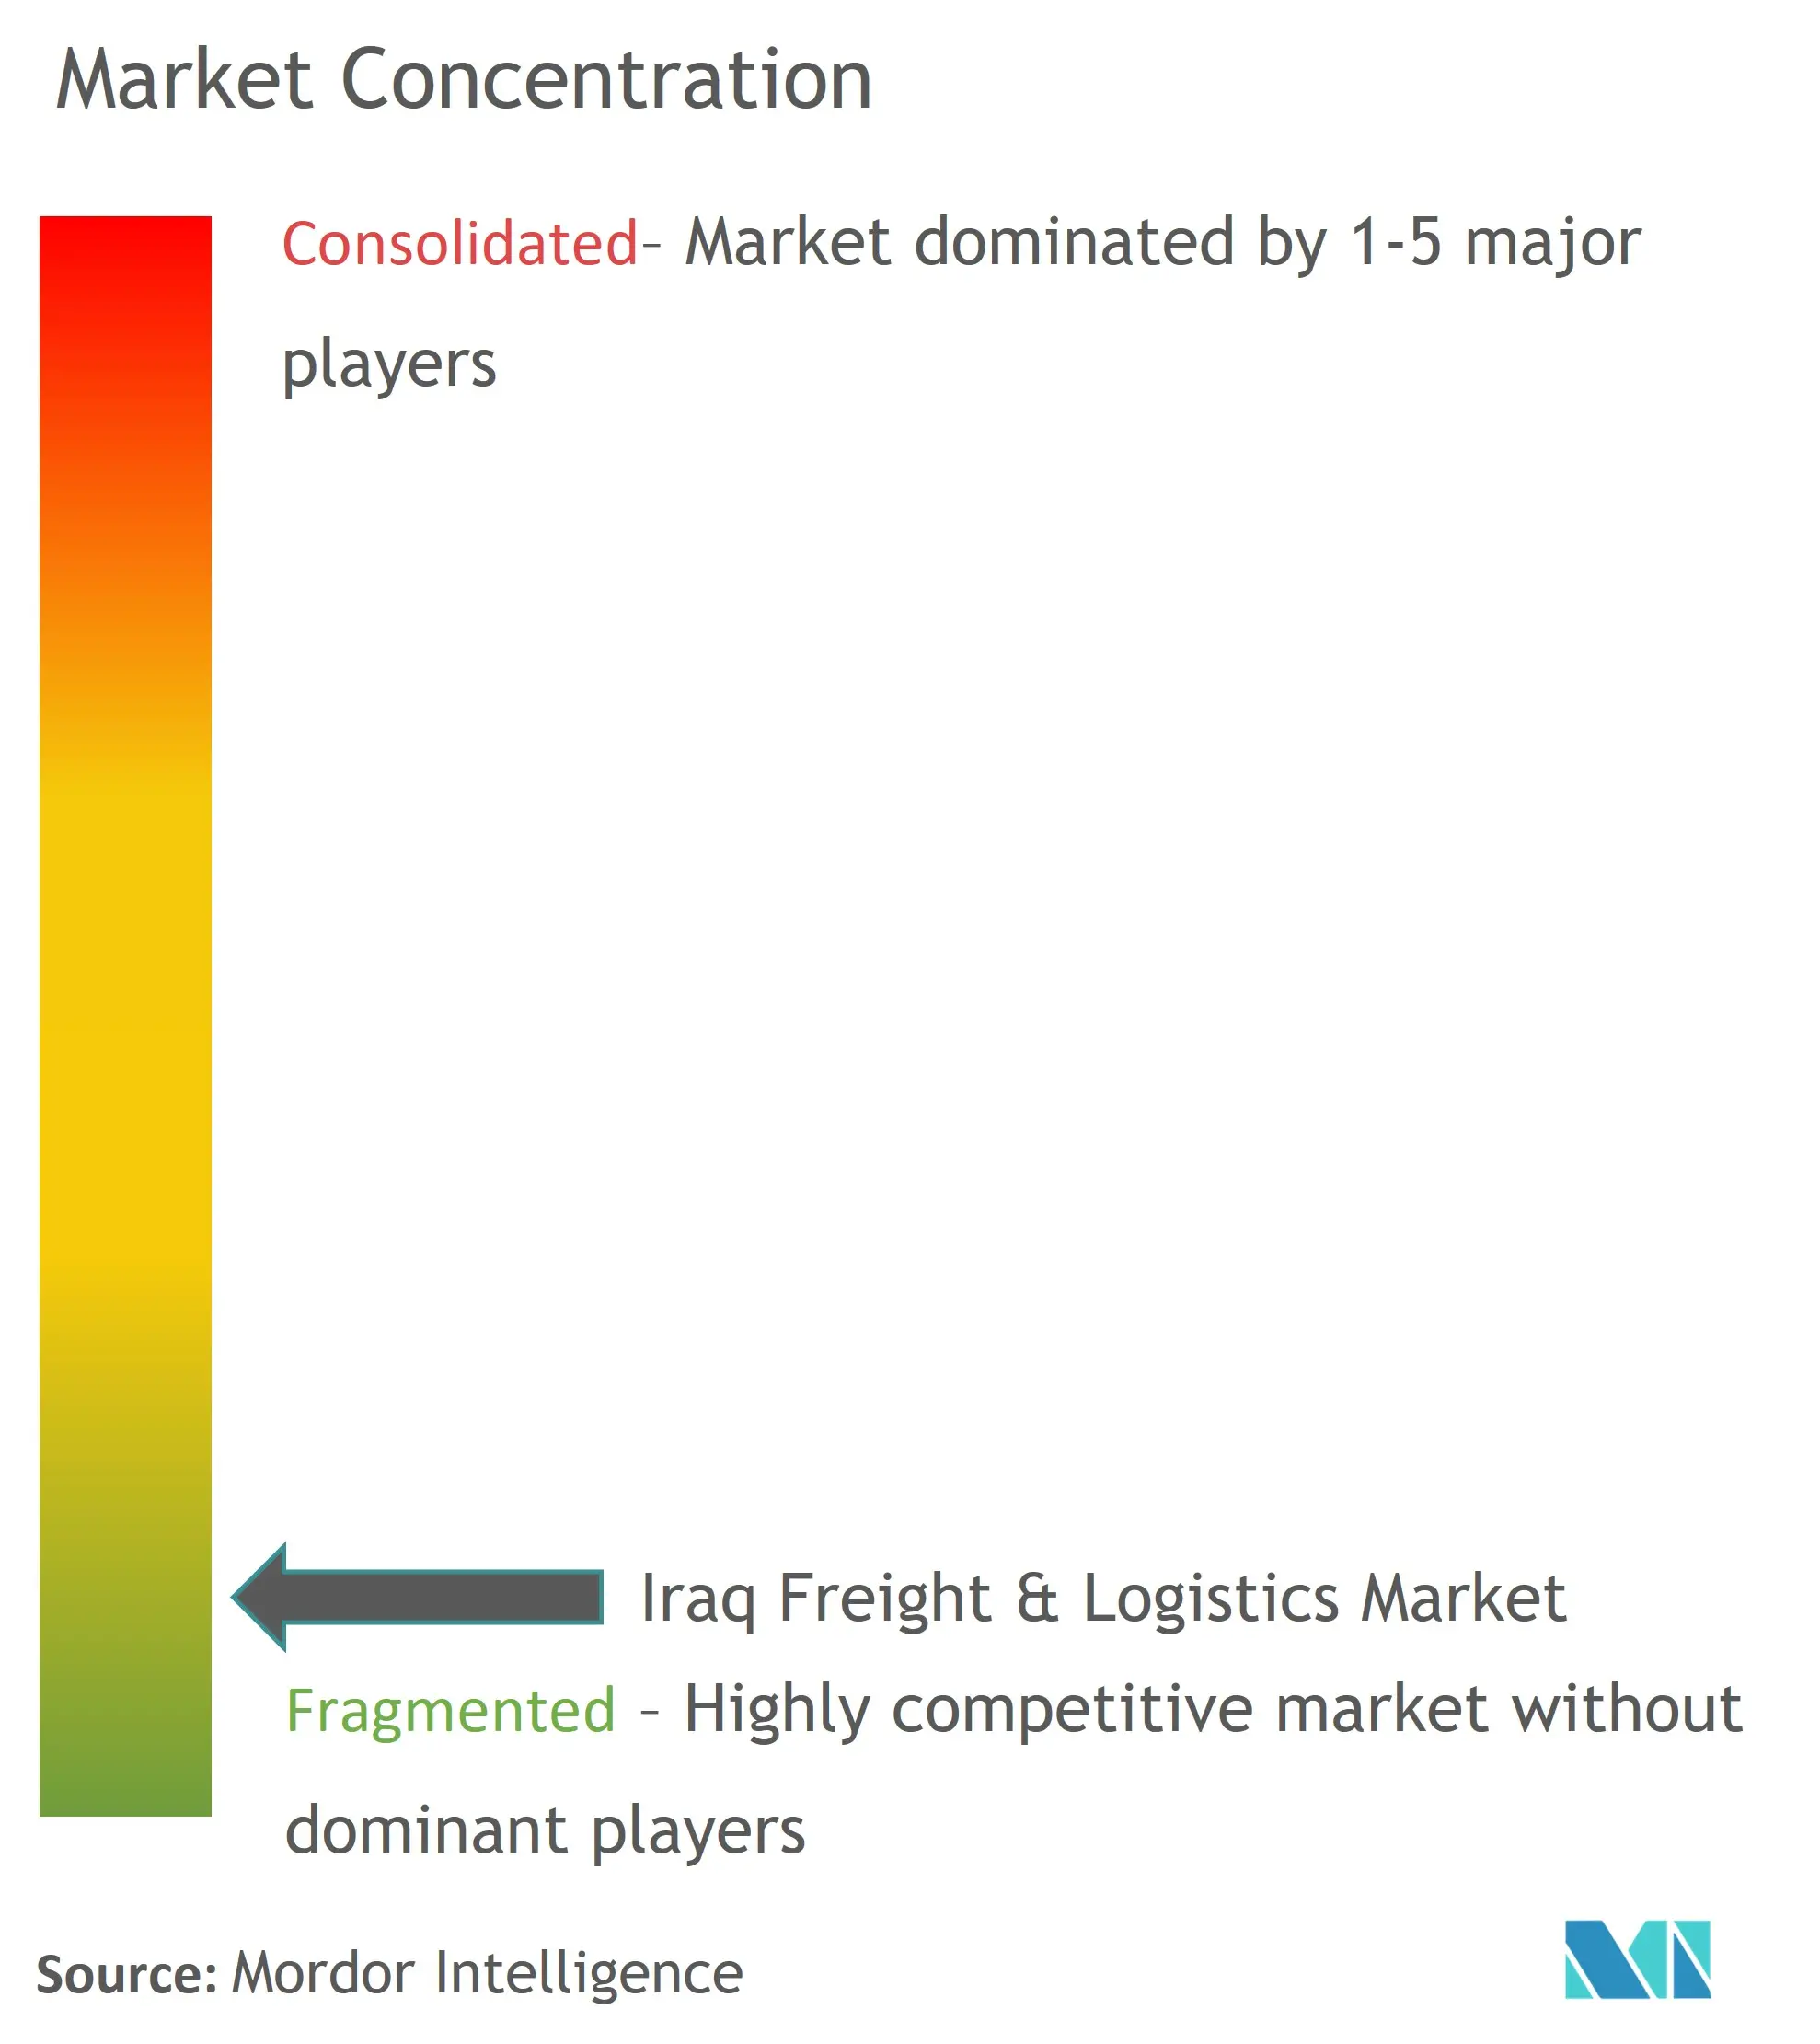 イラクの貨物・物流市場の集中度